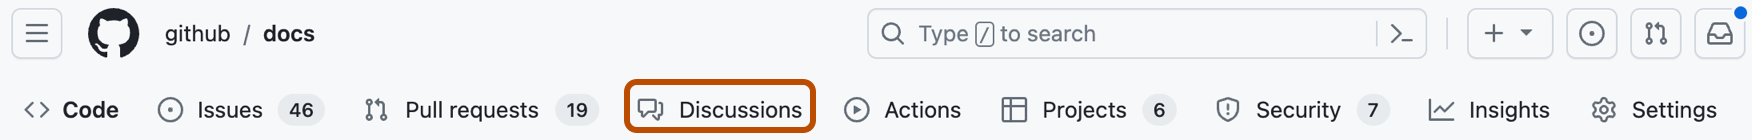 Capture d’écran des onglets d’un dépôt GitHub. L’option « Discussions » est présentée en orange foncé.